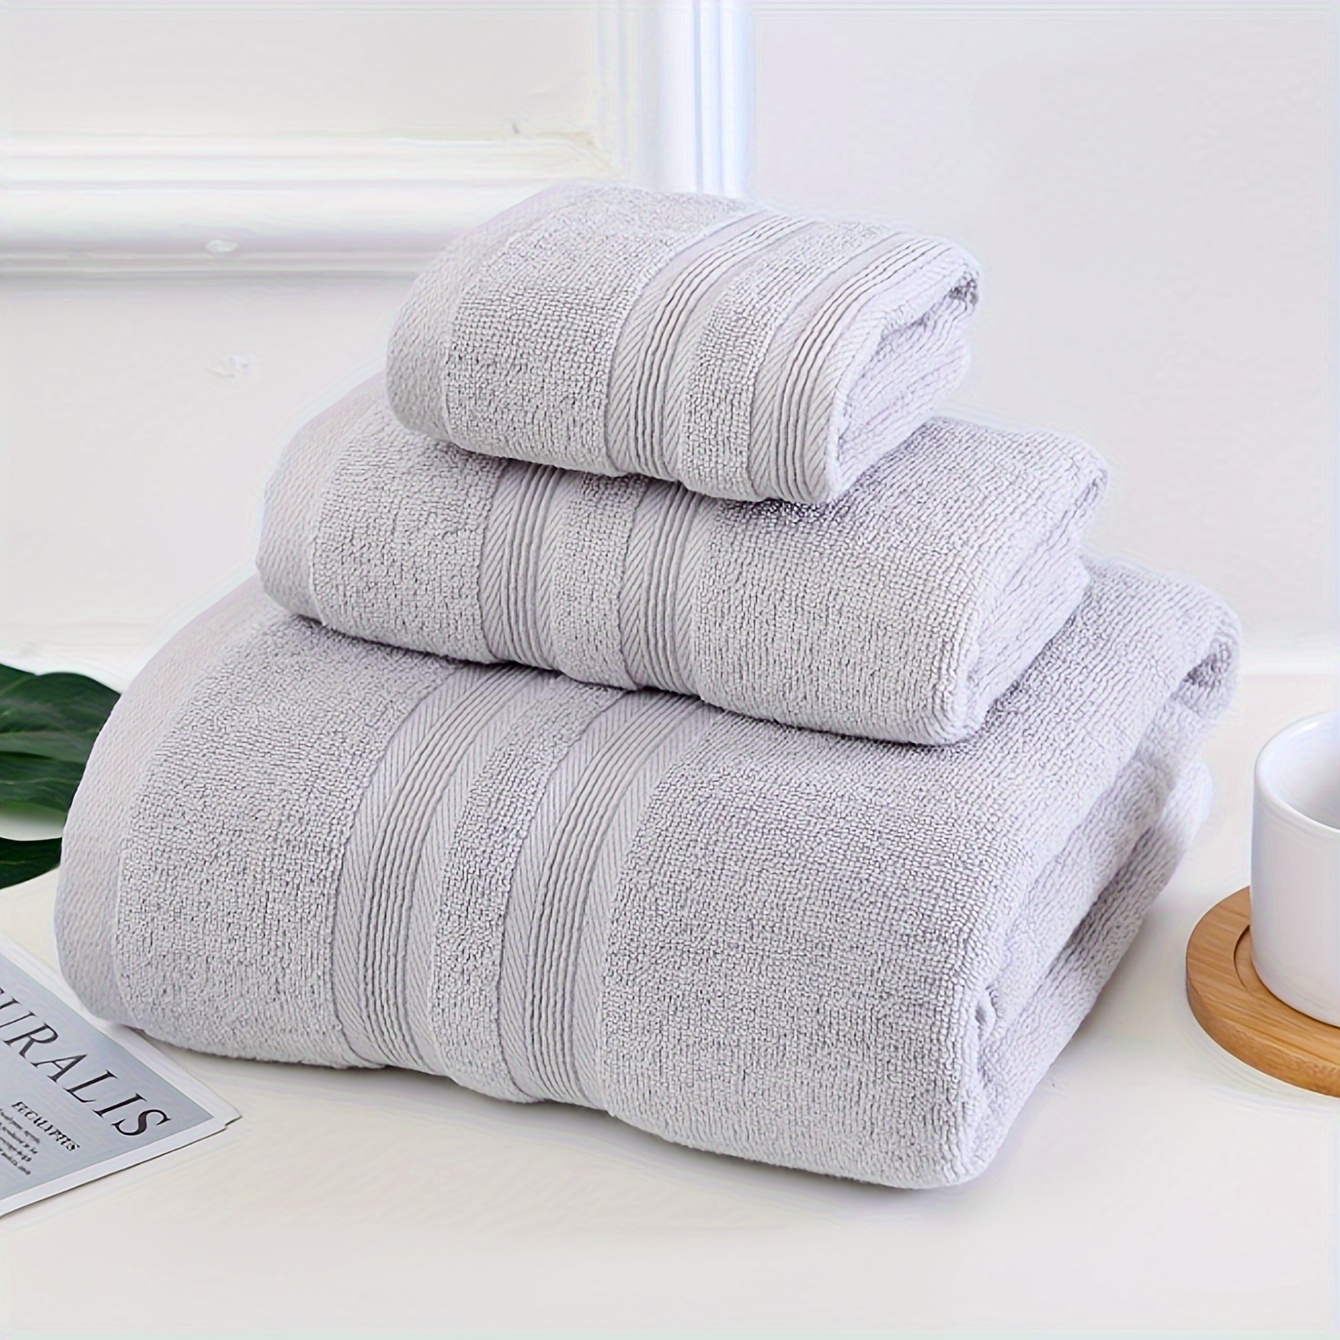 3-teiliges Hochwertiges Badetuch-Set, 1 Quadratisches Handtuch & 1 Badetuch & 1 Handtuch - Weiches Saugfähiges Baumwoll-Duschtuch-Set Ideal Für Männer Und Frauen, Badezimmerbedarf, Haushaltsbedarf